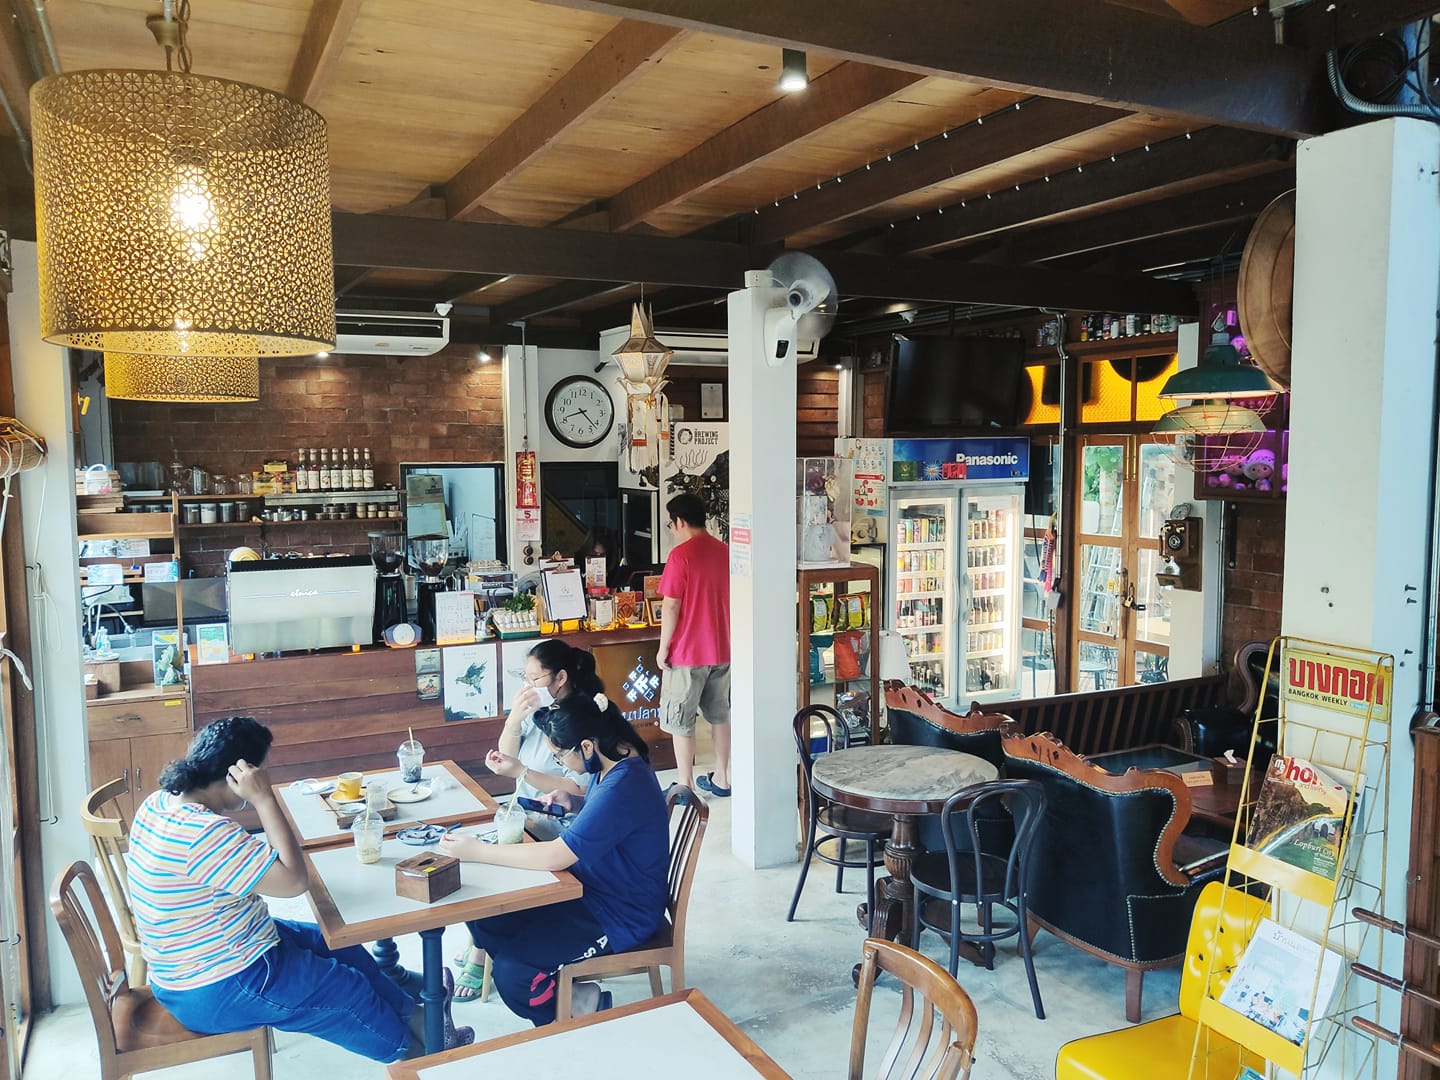 บ้านปลาชุม (Baanplachum Cafe) : ฉะเชิงเทรา (Chachoengsao)